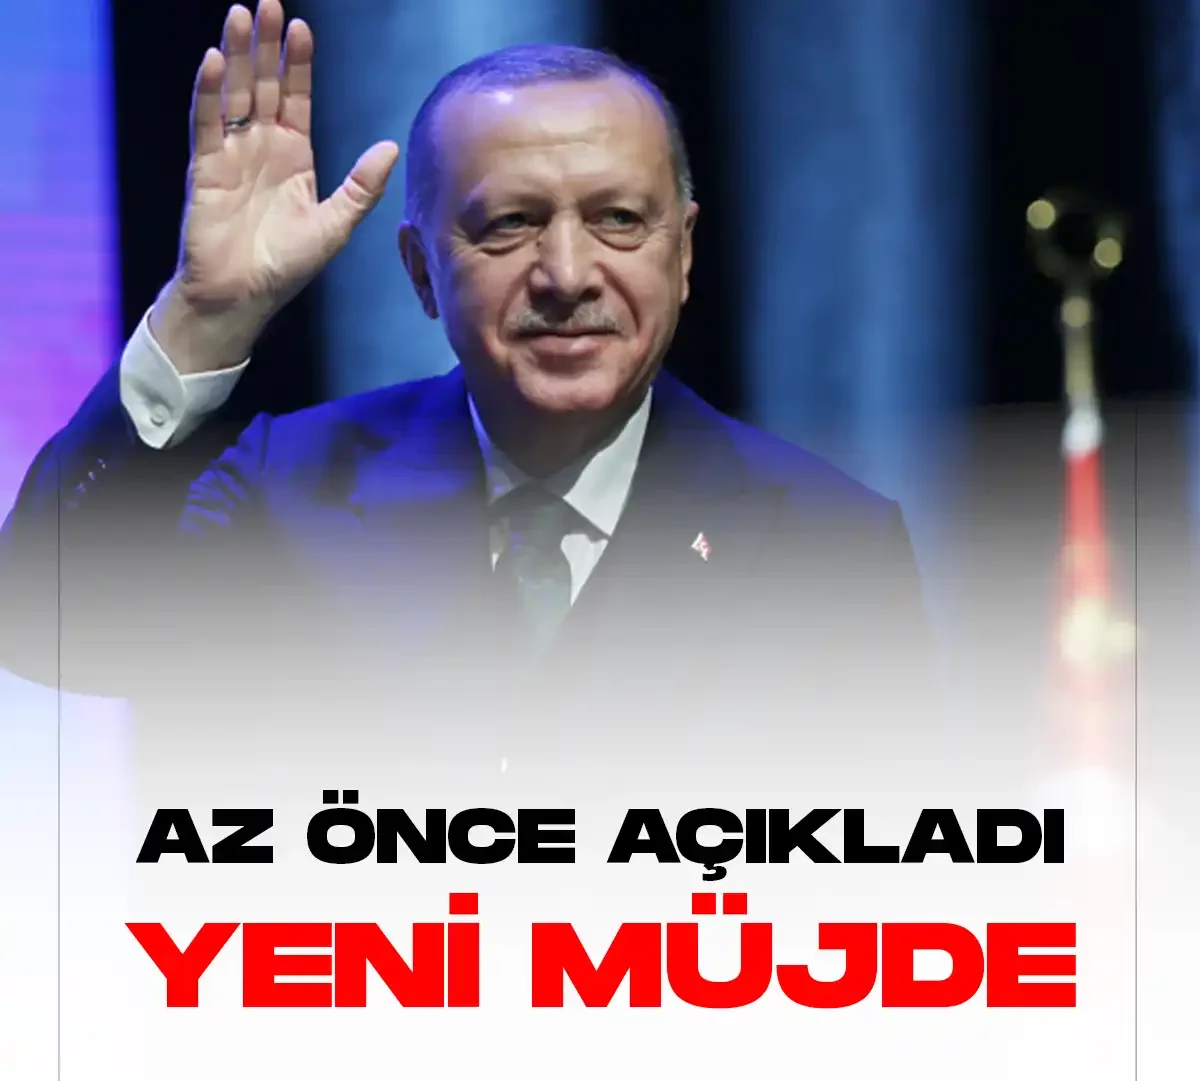 Cumhurbaşkanı Erdoğan yeni müjdeyi açıkladı.